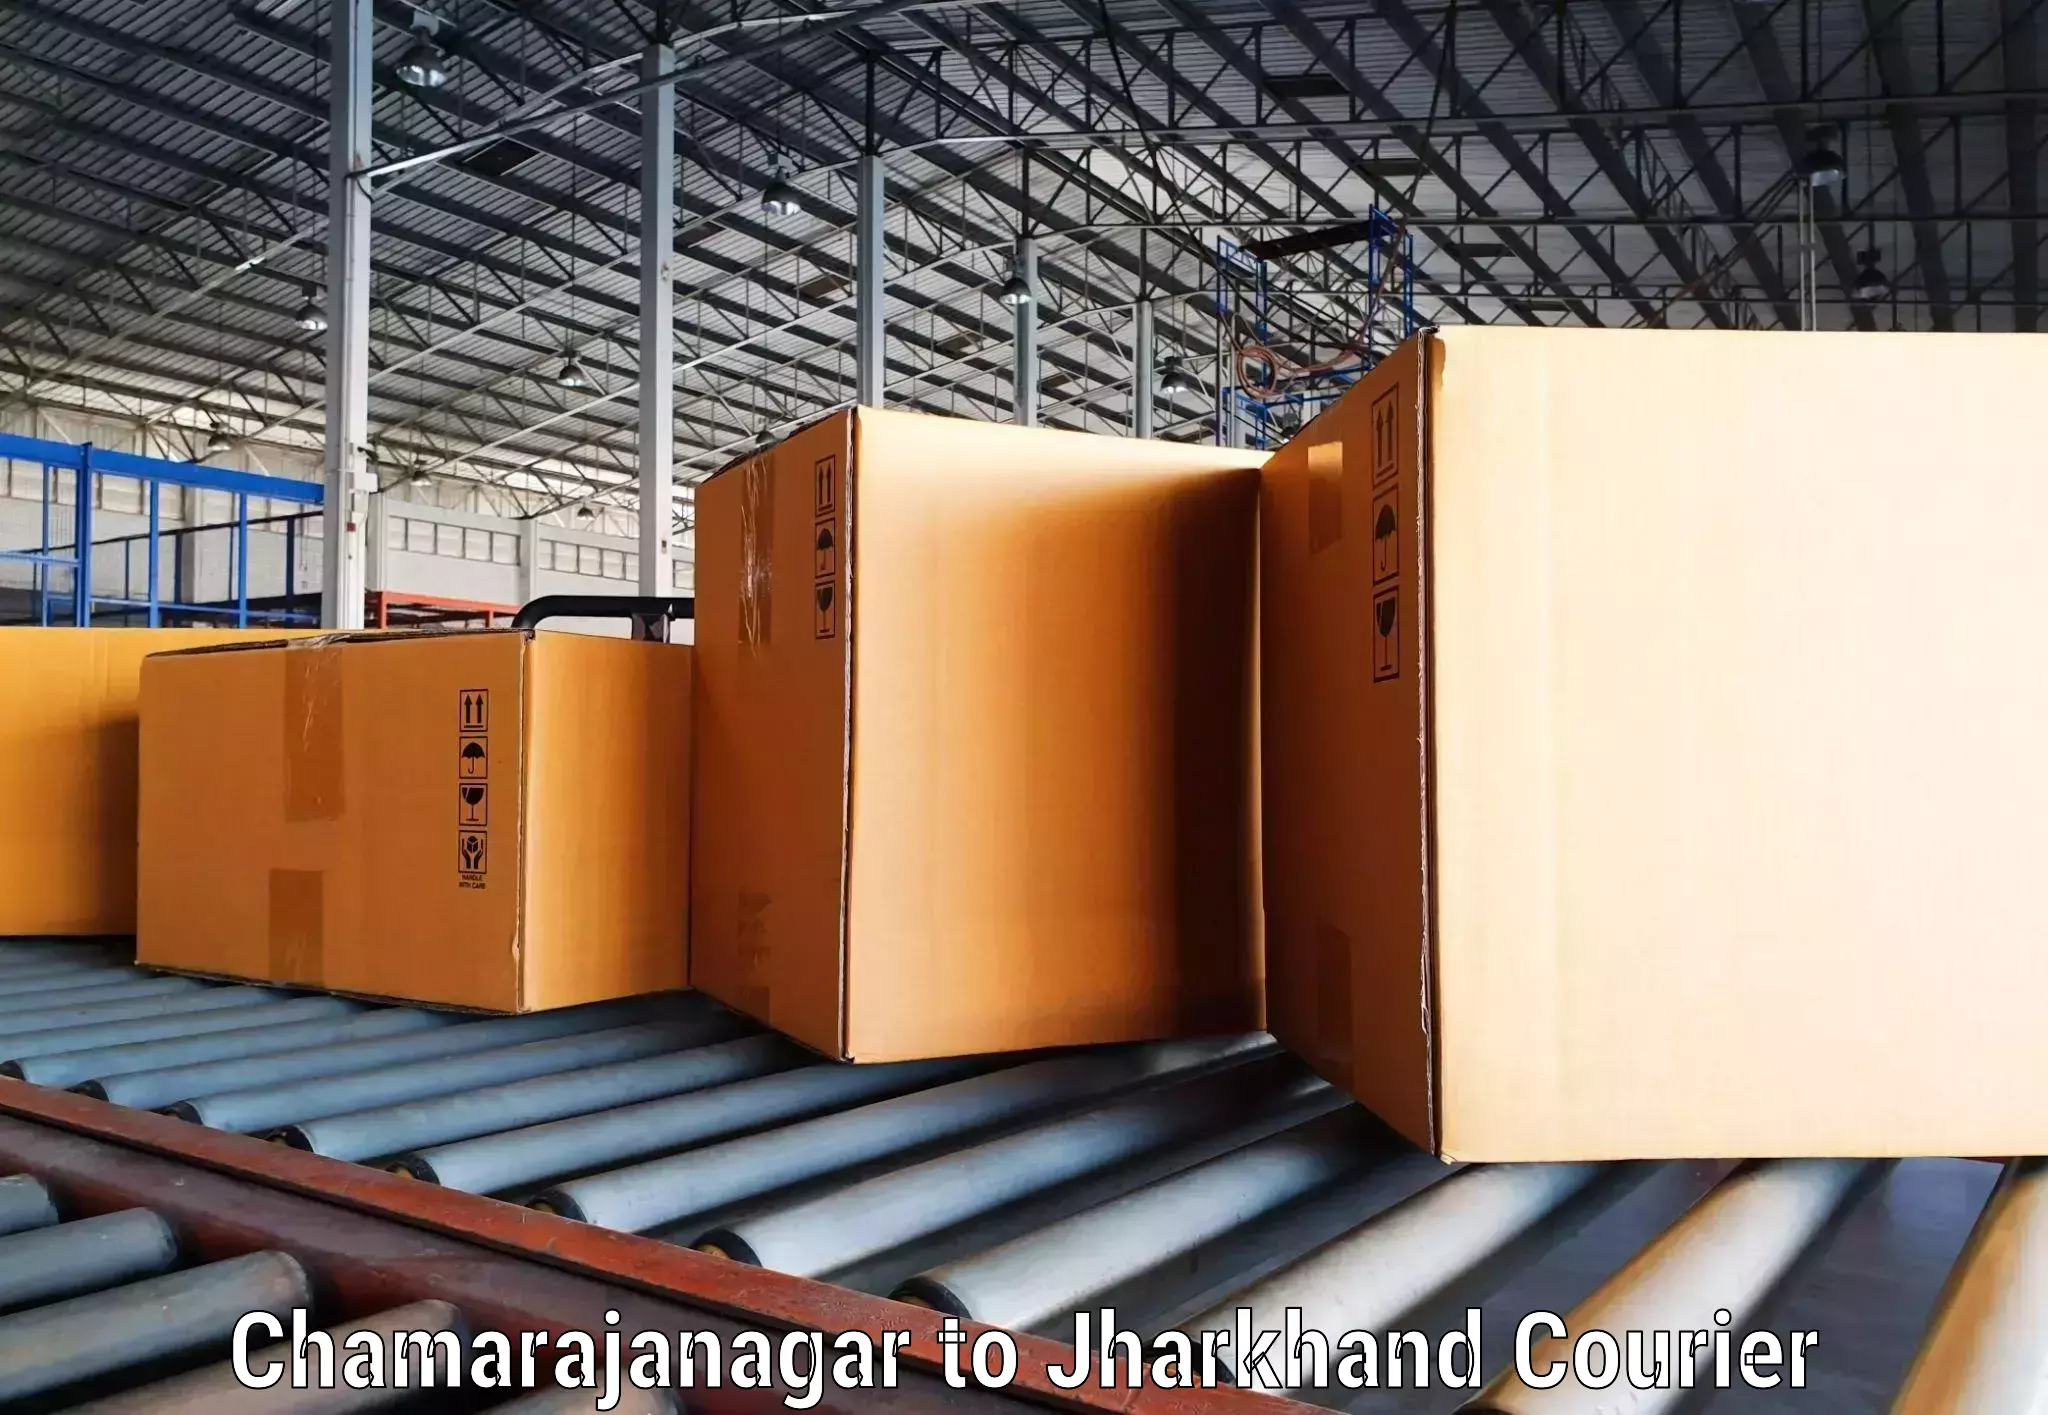 Track and trace shipping Chamarajanagar to Barki Saria